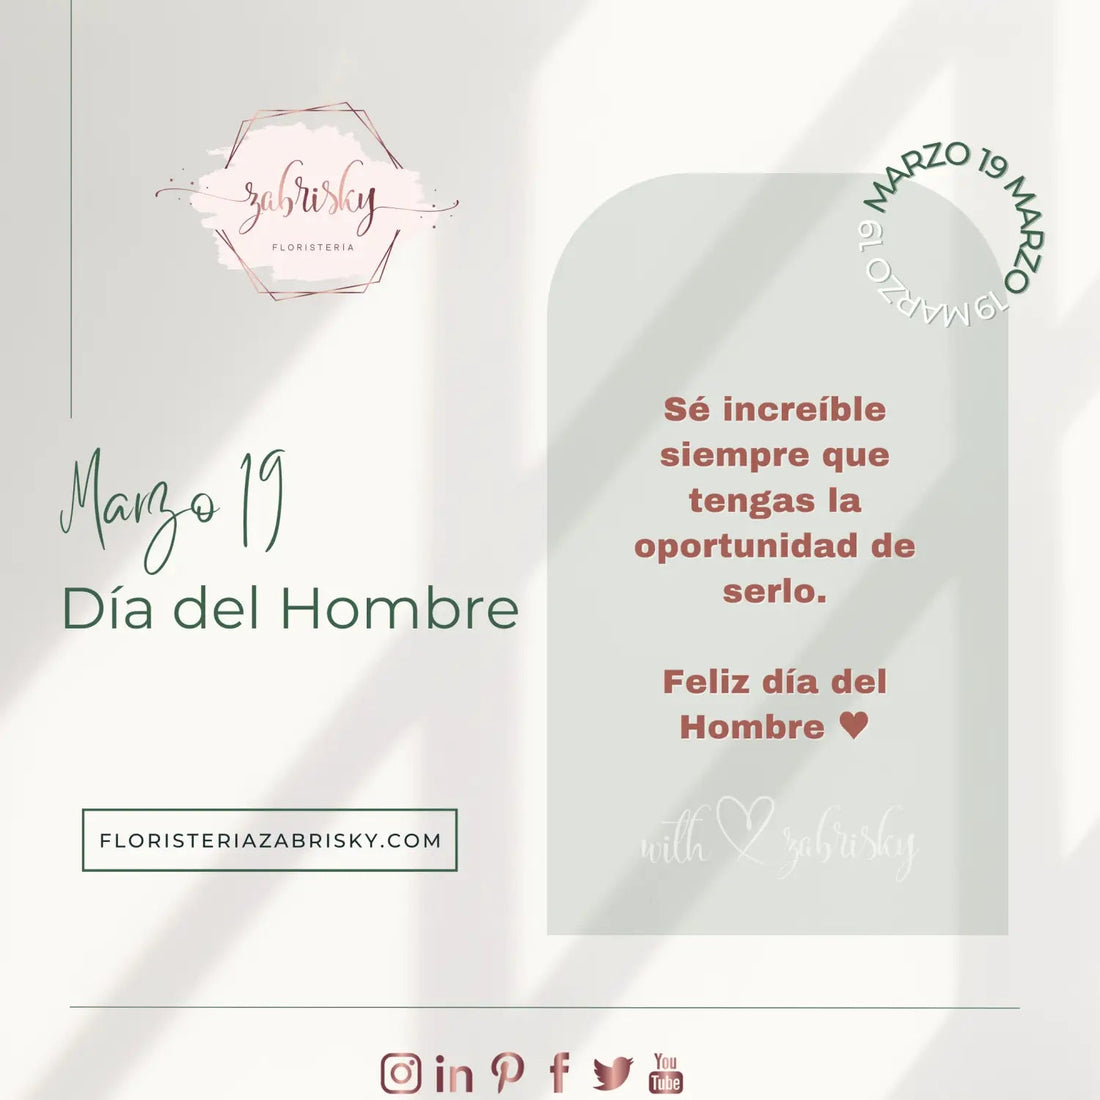 Marzo 19 - Flores y detalles para hombres - Floristería Zabrisky